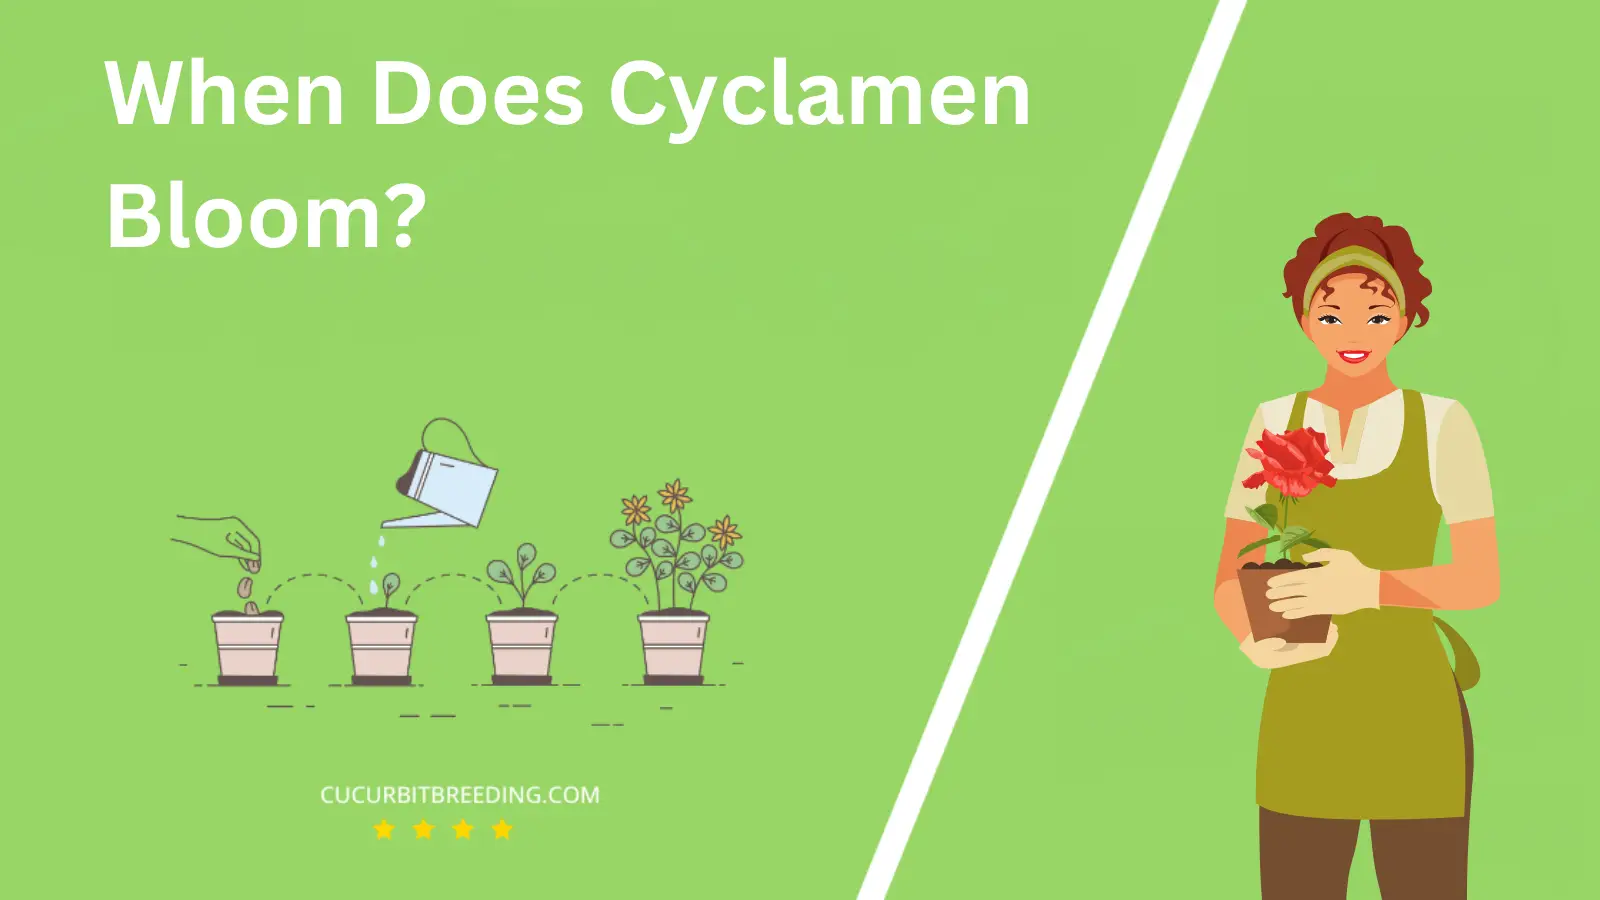 When Does Cyclamen Bloom?